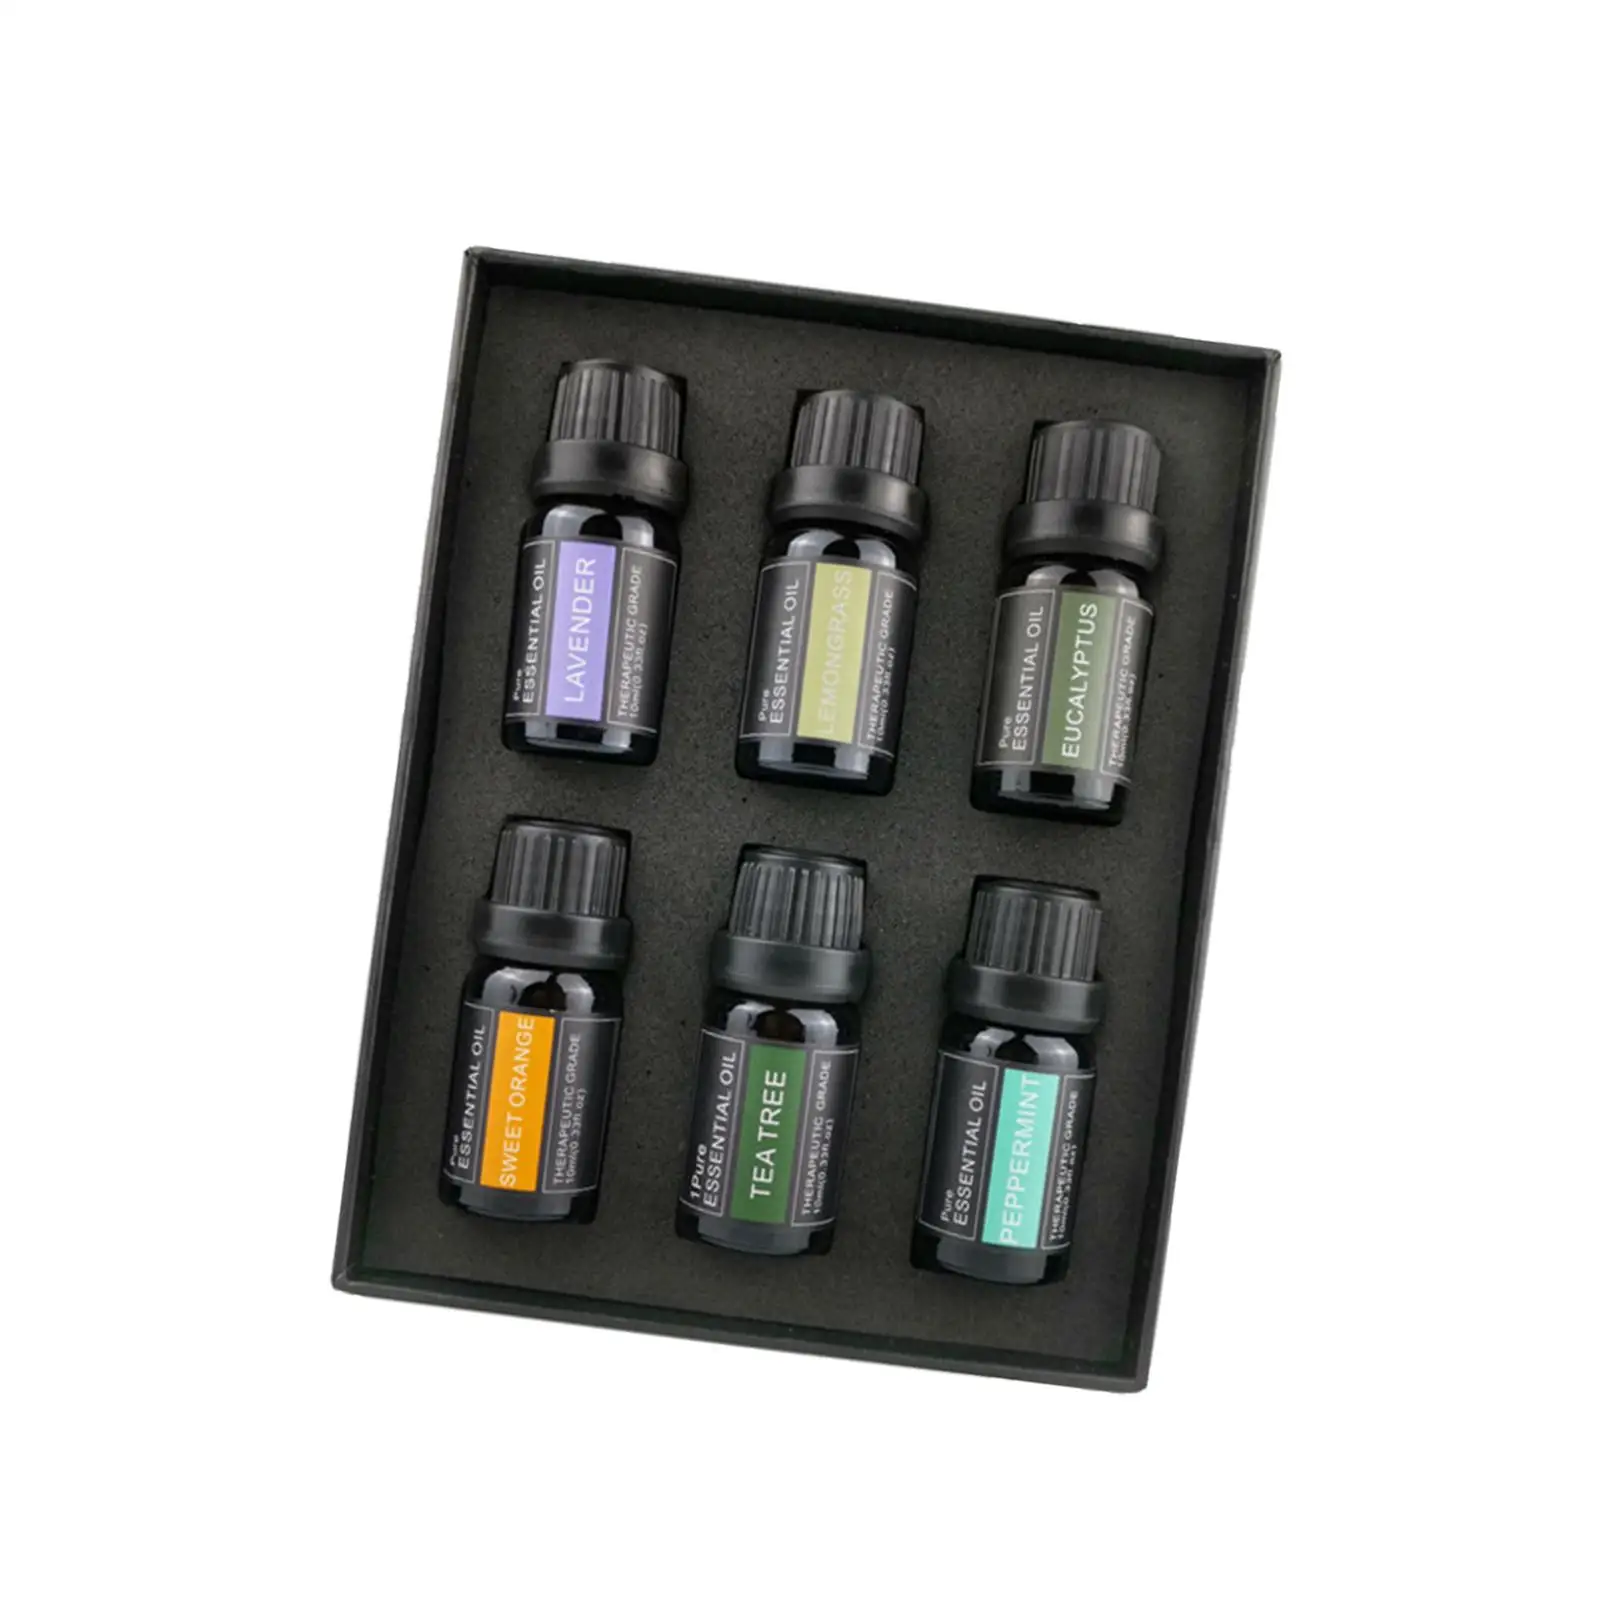 Premium Aromatherapy Oils Gift Kit 10ml(1/3 oz) Lemon Essential Oil Set for Home